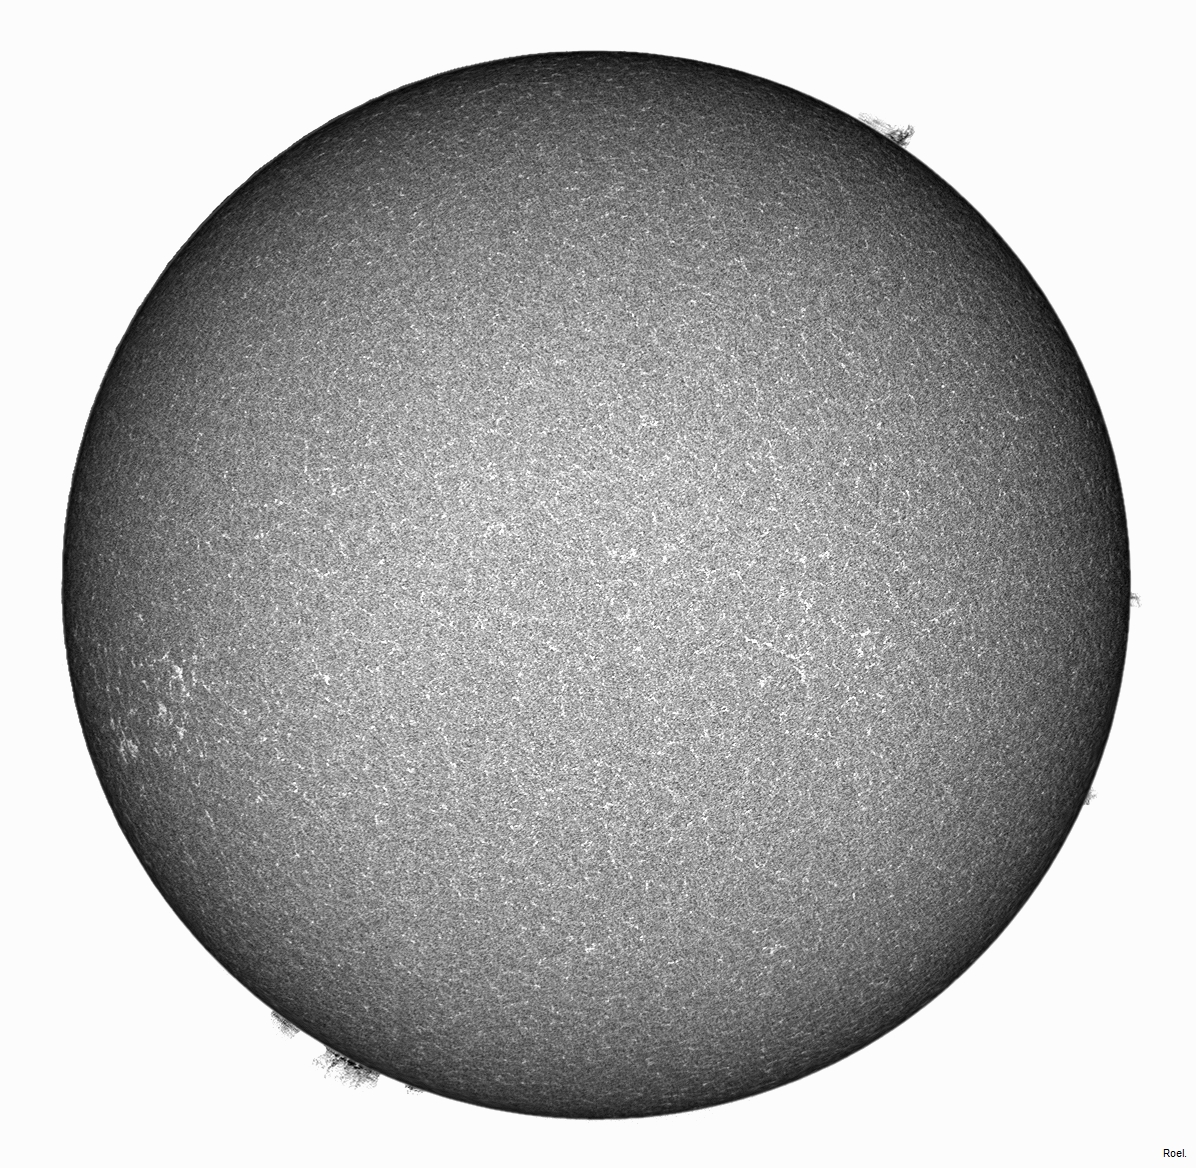 Sol del 1 de septiembre del 2018-Meade-CaK-PSTmod-2mix.jpg